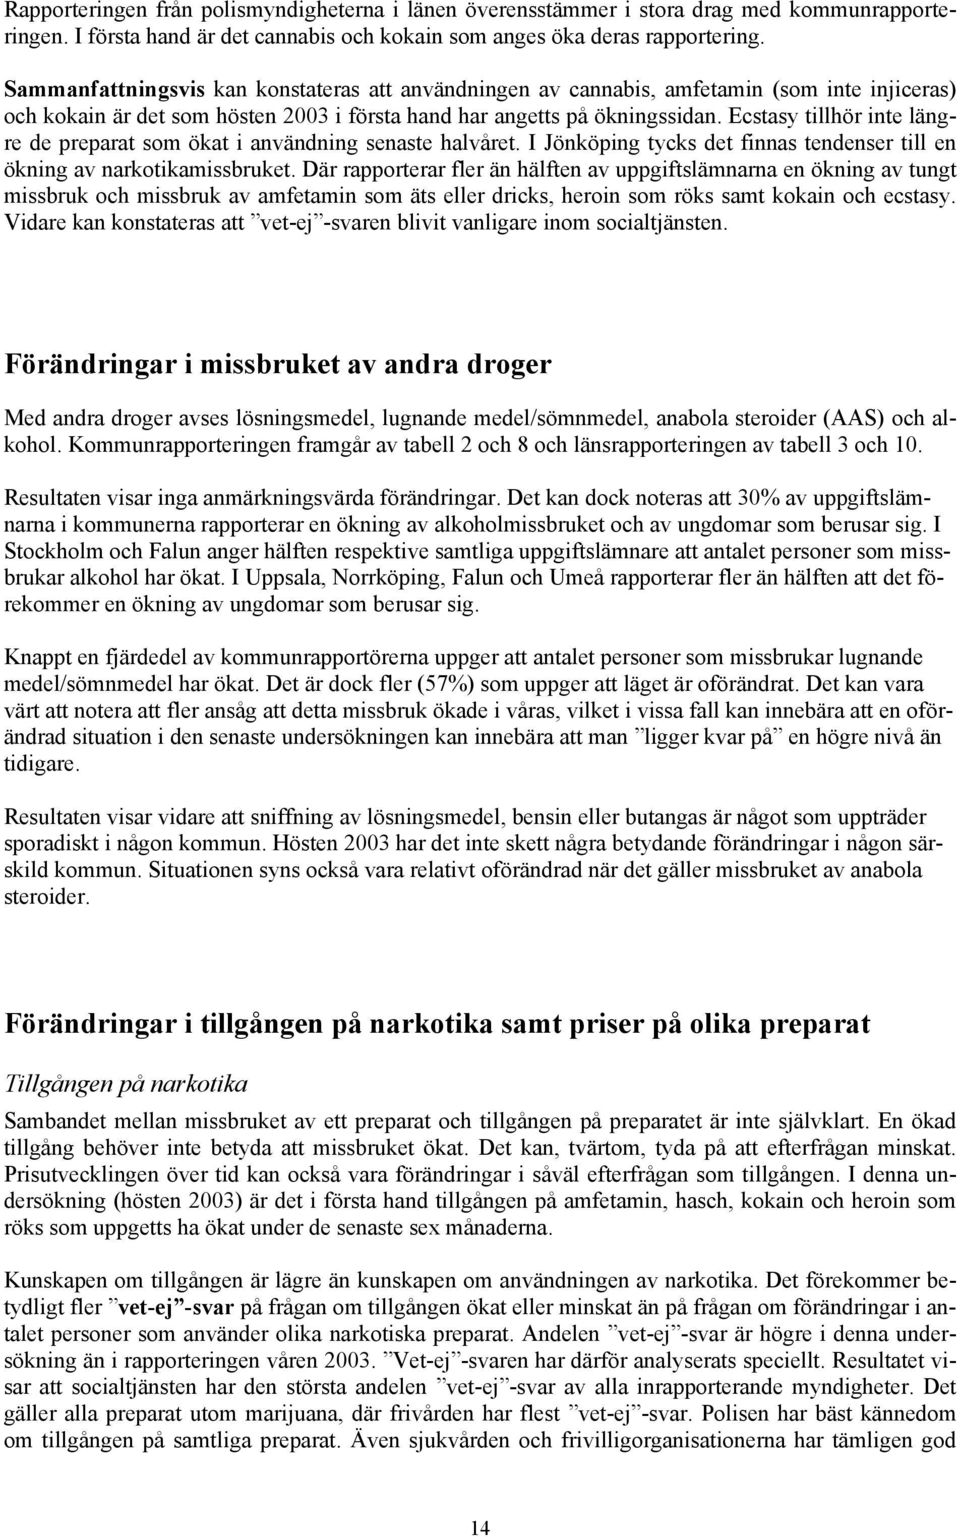 Ecstasy tillhör inte längre de preparat som ökat i användning senaste halvåret. I Jönköping tycks det finnas tendenser till en ökning av narkotikamissbruket.